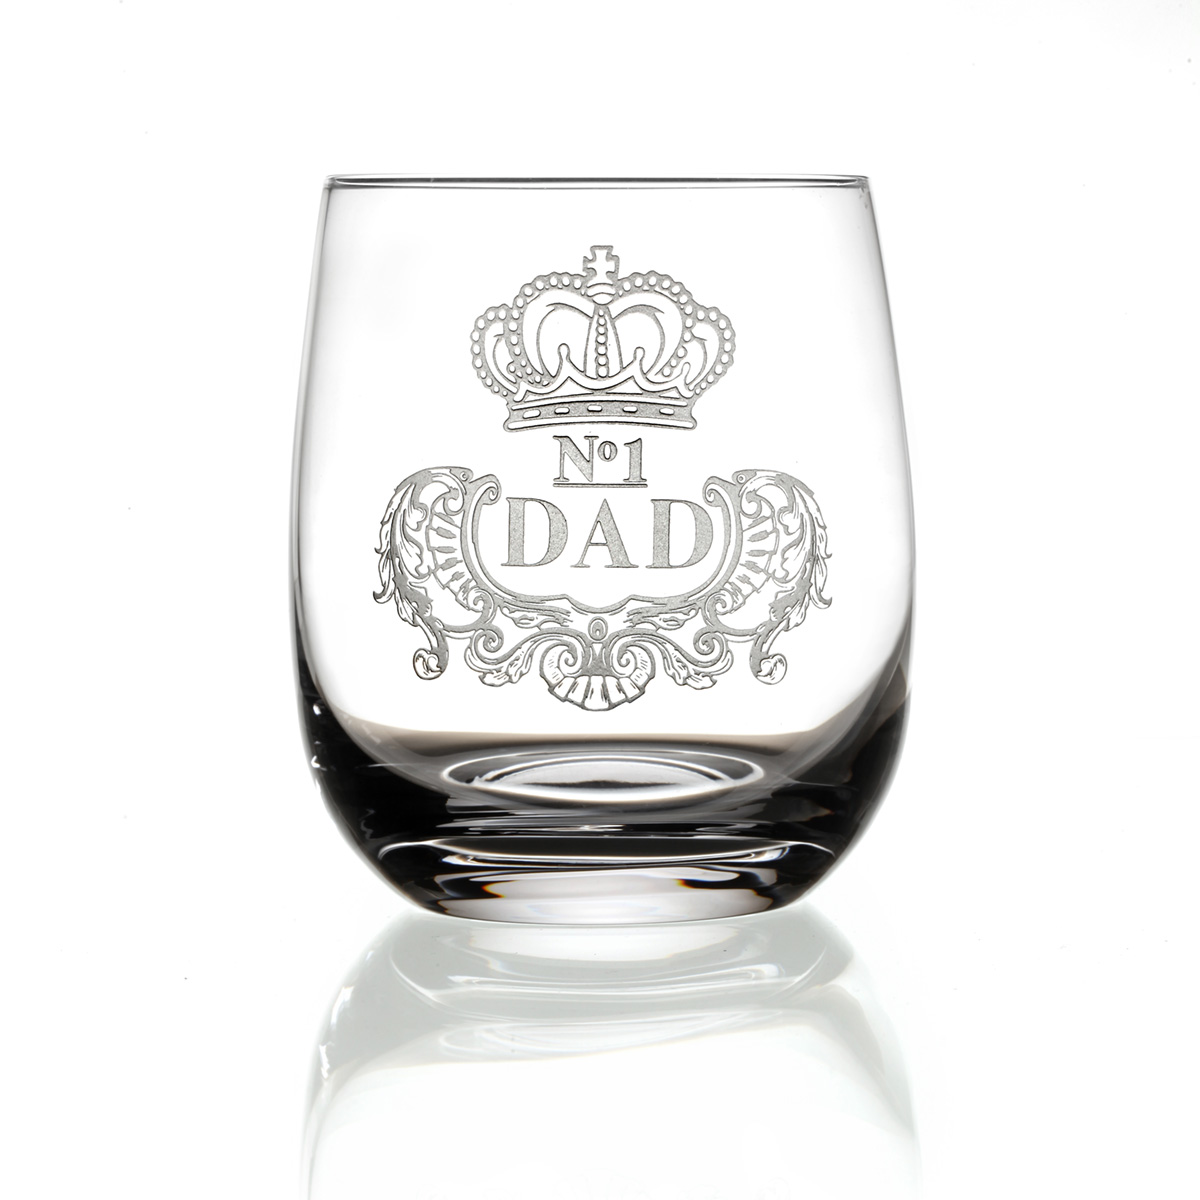 No.1 DAD - Handgefertigter Barrel Whisky Tumbler aus Kristallglas mit Gravur